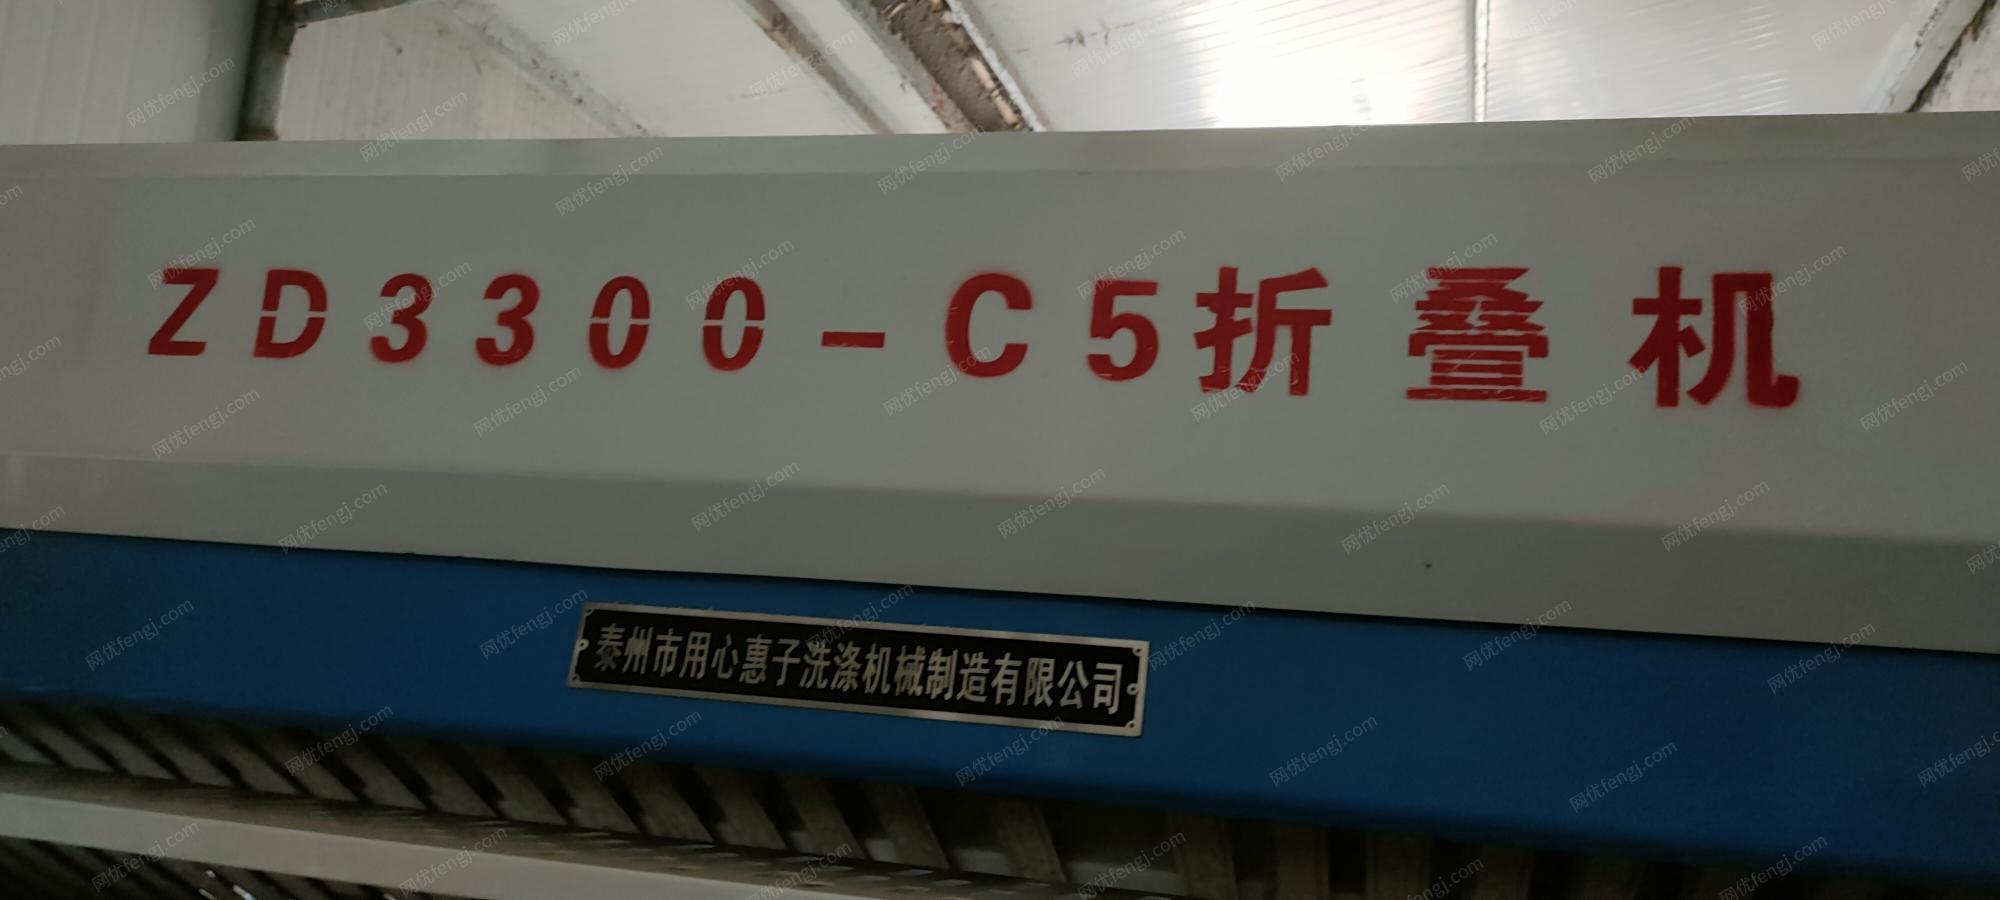 贵州黔东南二手折叠机D3300-C5转让